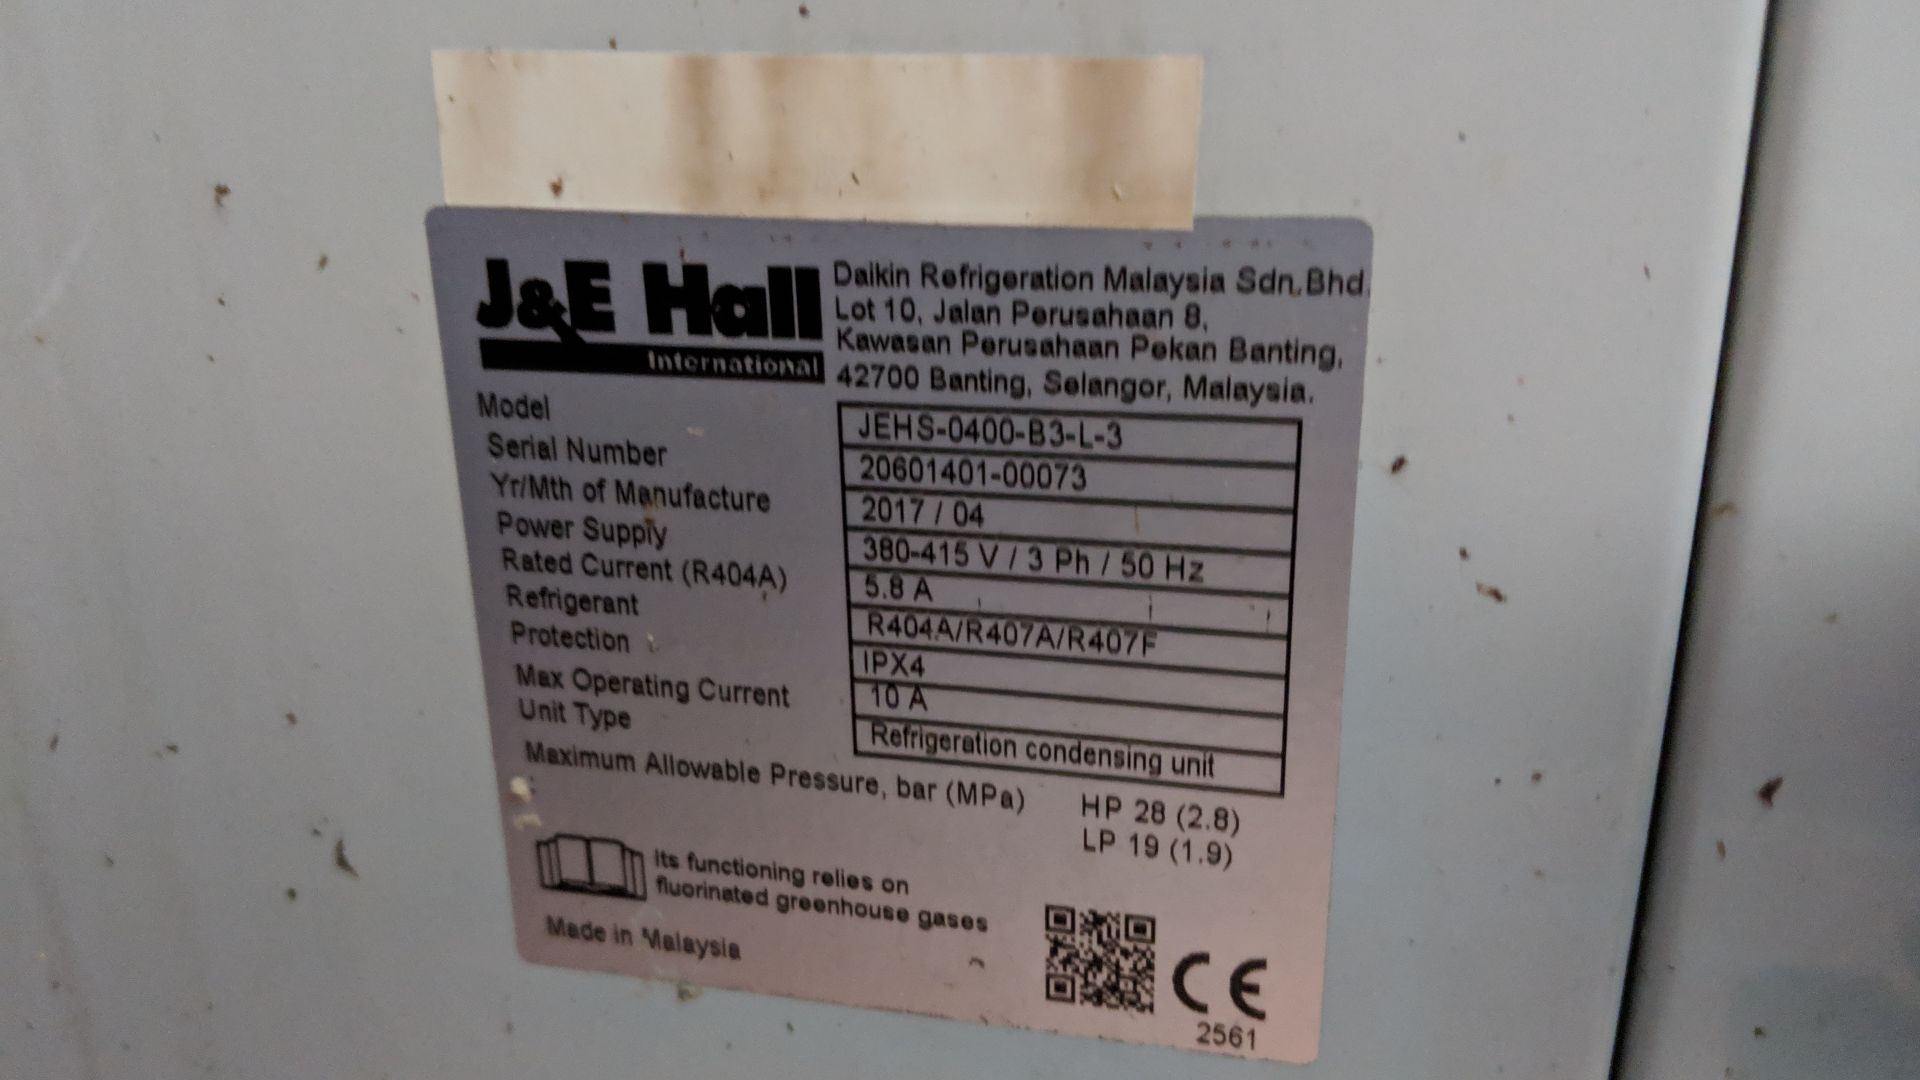 2017 J & E Hall Fusion Scroll condenser, Maxkolf evaporator and Mastercella control - Image 9 of 17